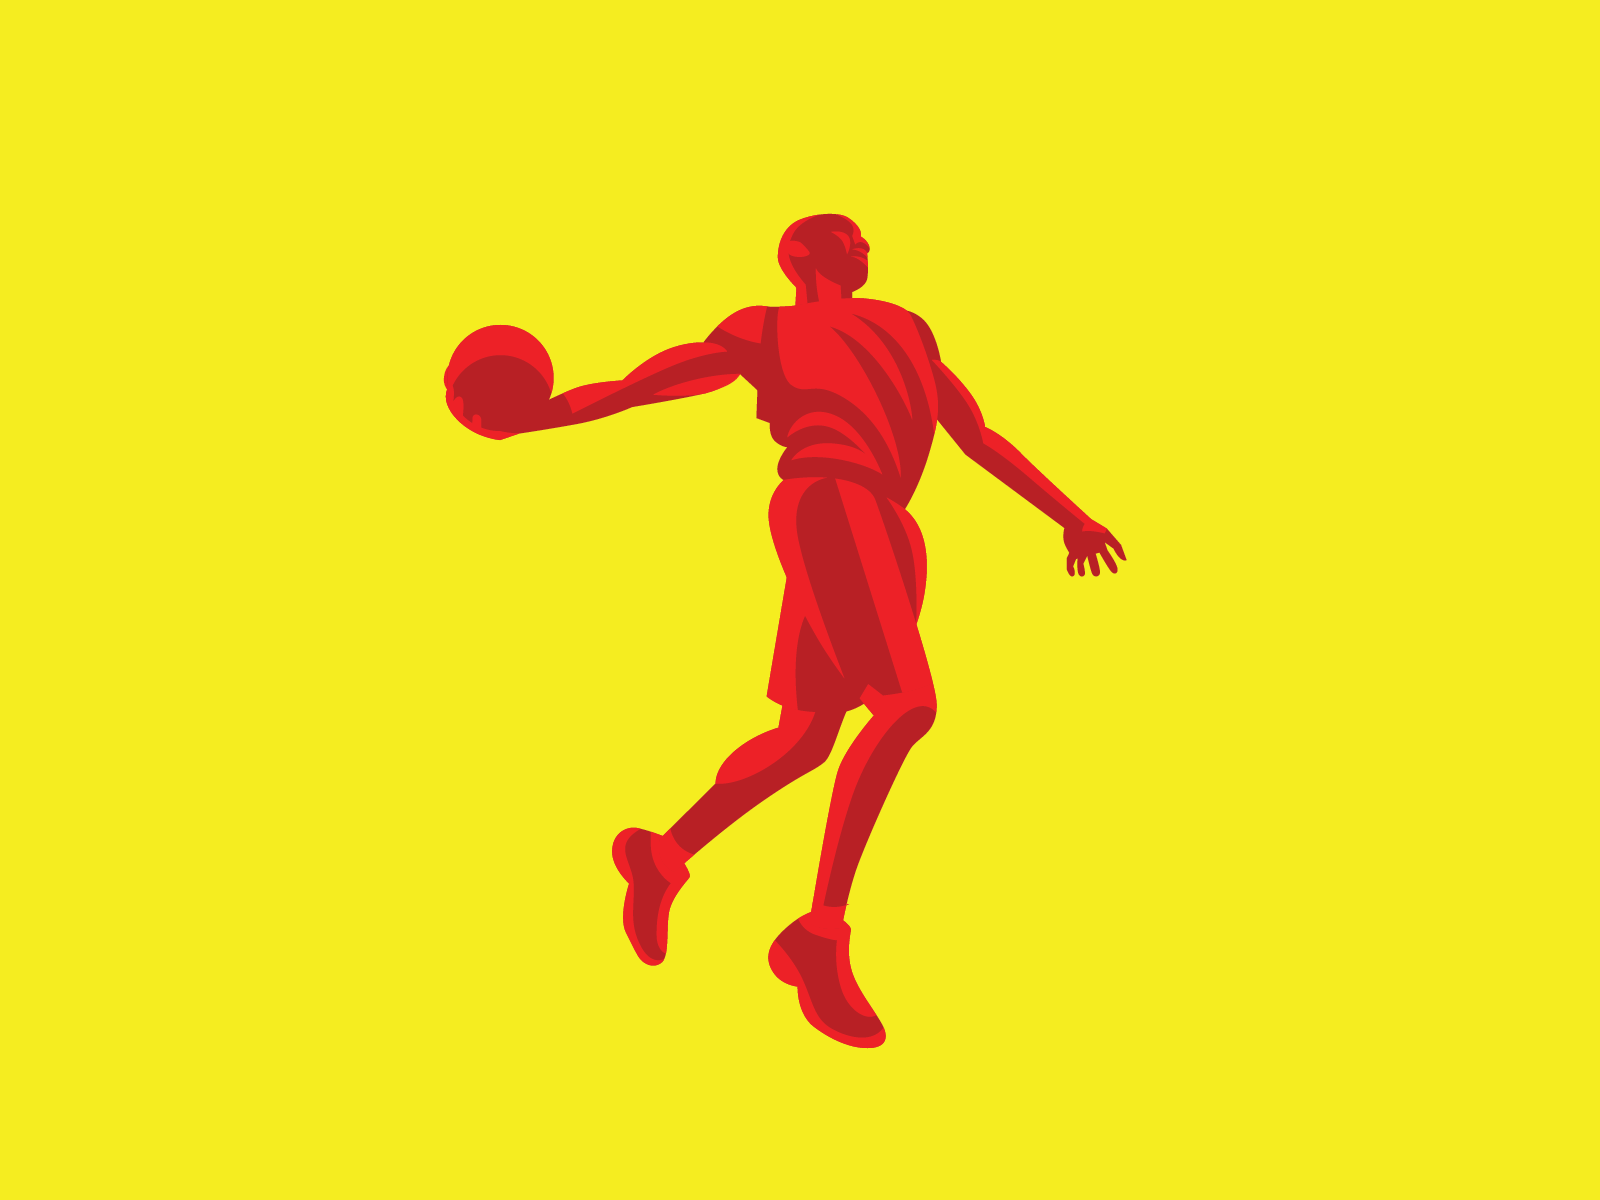 Vince Carter Podcast podcast vince carter nba dunk portrait illustration basketball